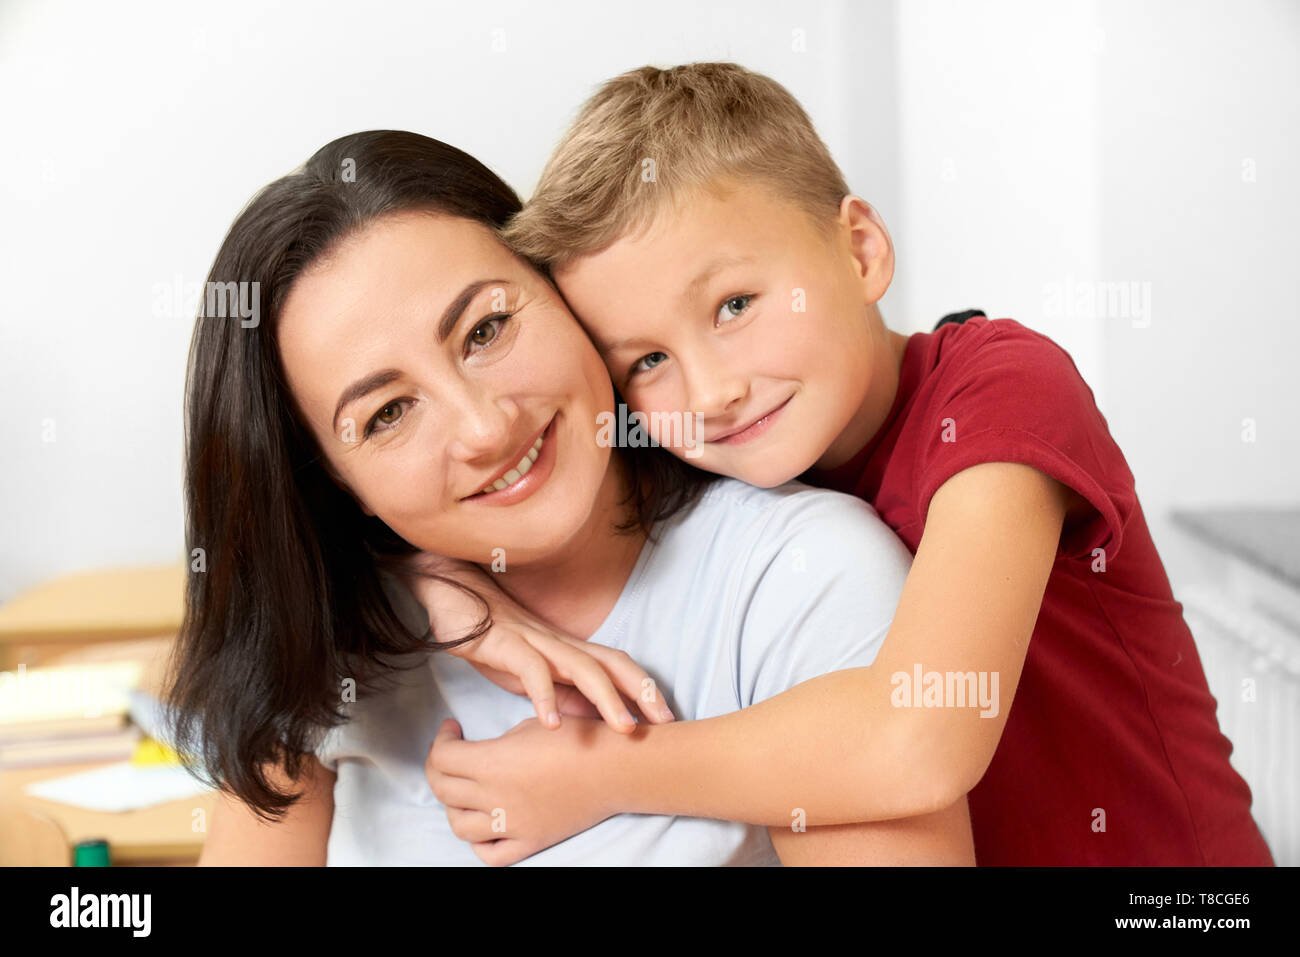 Portrait of happy, joyeux écolier et sa mère posant en classe. Bel enfant debout, serrant maman, smiling, looking at camera. Notion de famille. Banque D'Images